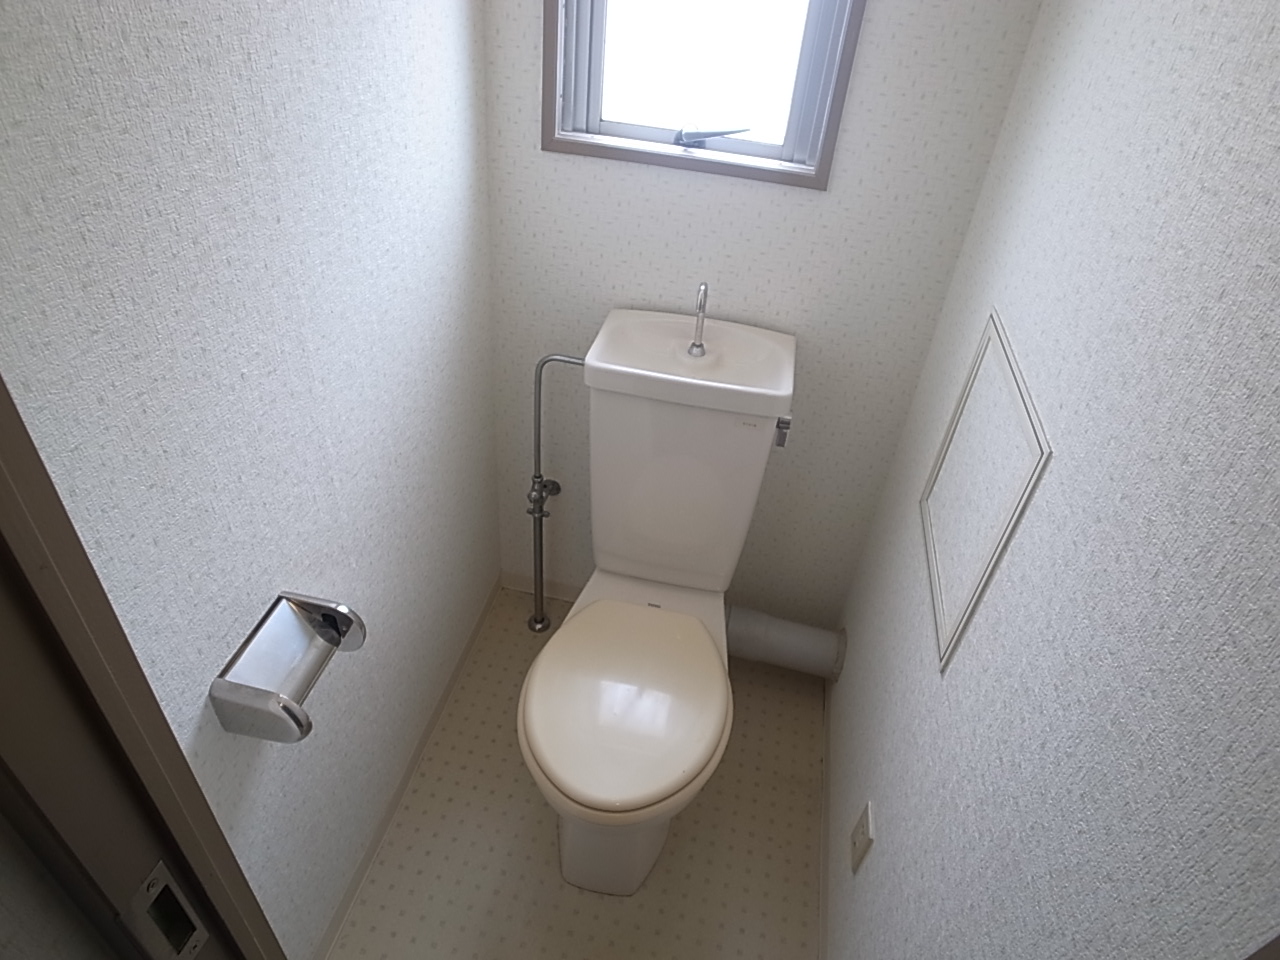 Toilet. This toilet has a window!